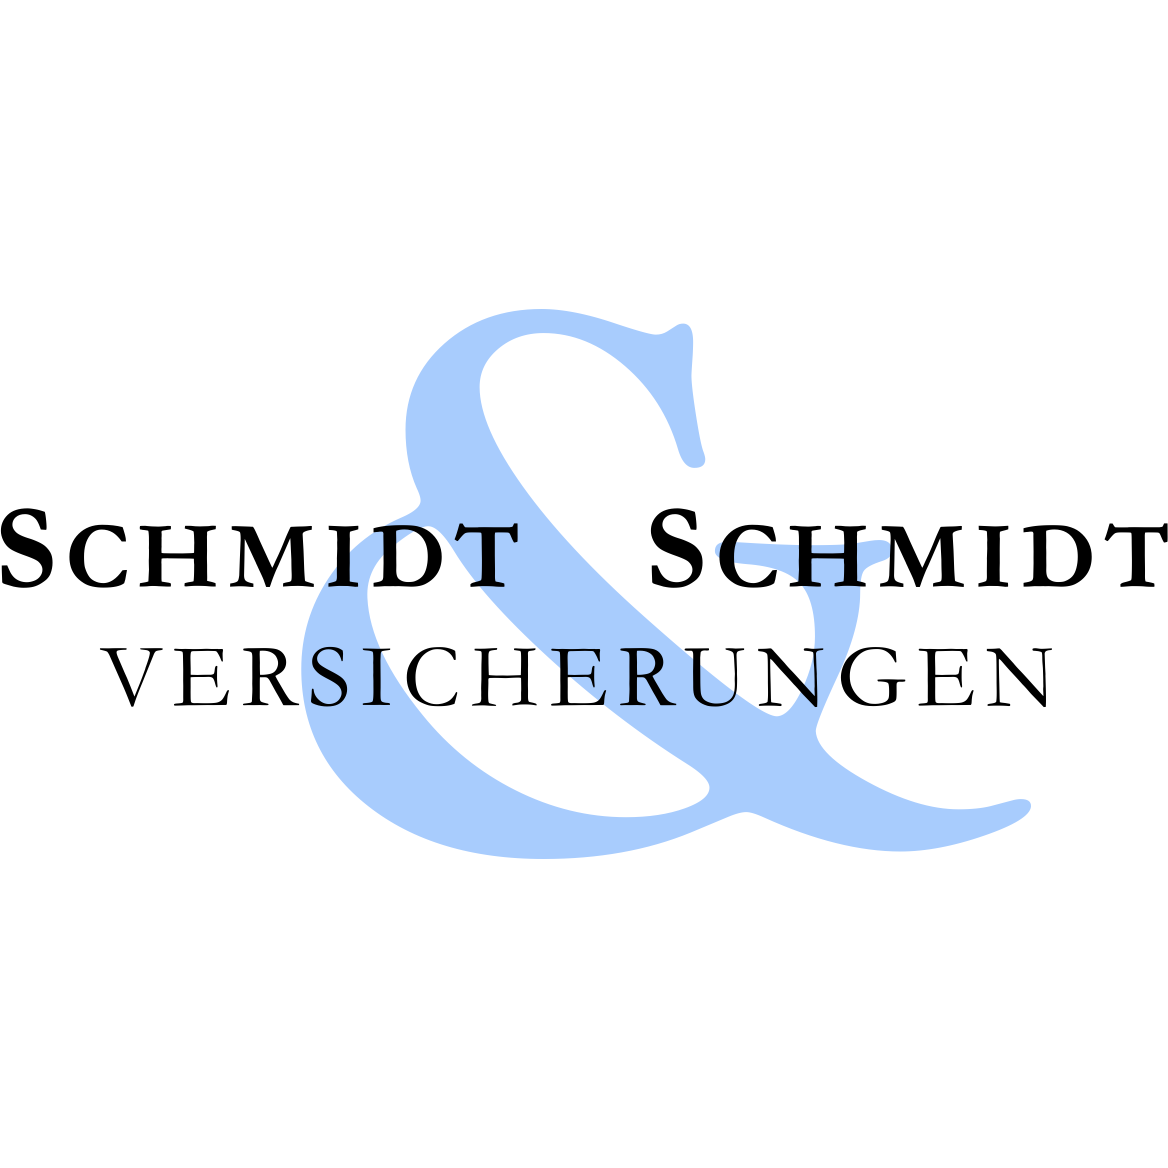 SCHMIDT & SCHMIDT Versicherungsberatungs- u Versicherungsmakler GmbH Logo